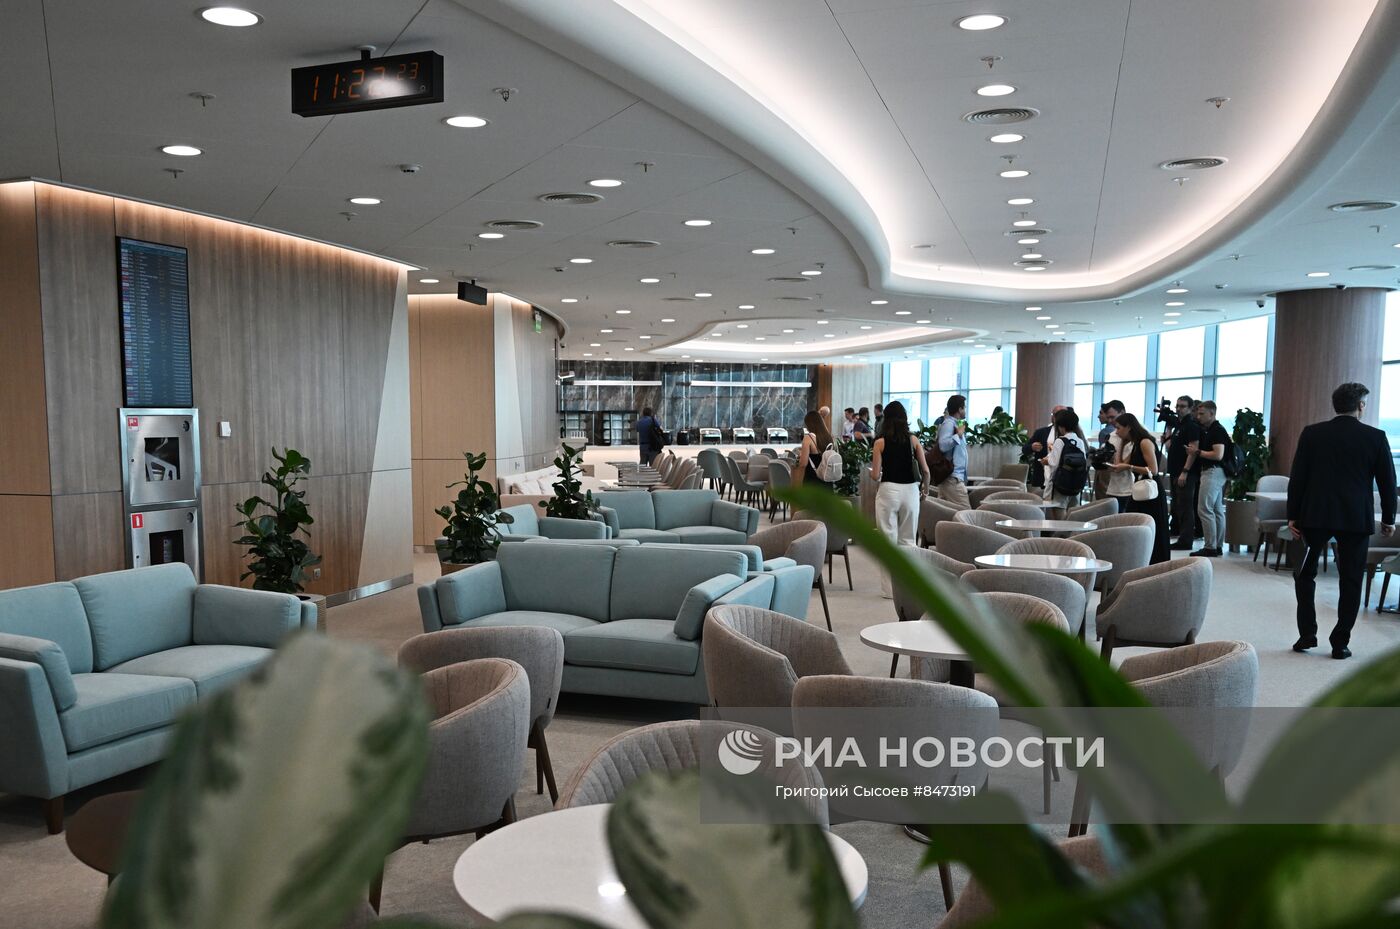 Новый сегмент пассажирского терминала московского аэропорта Домодедово